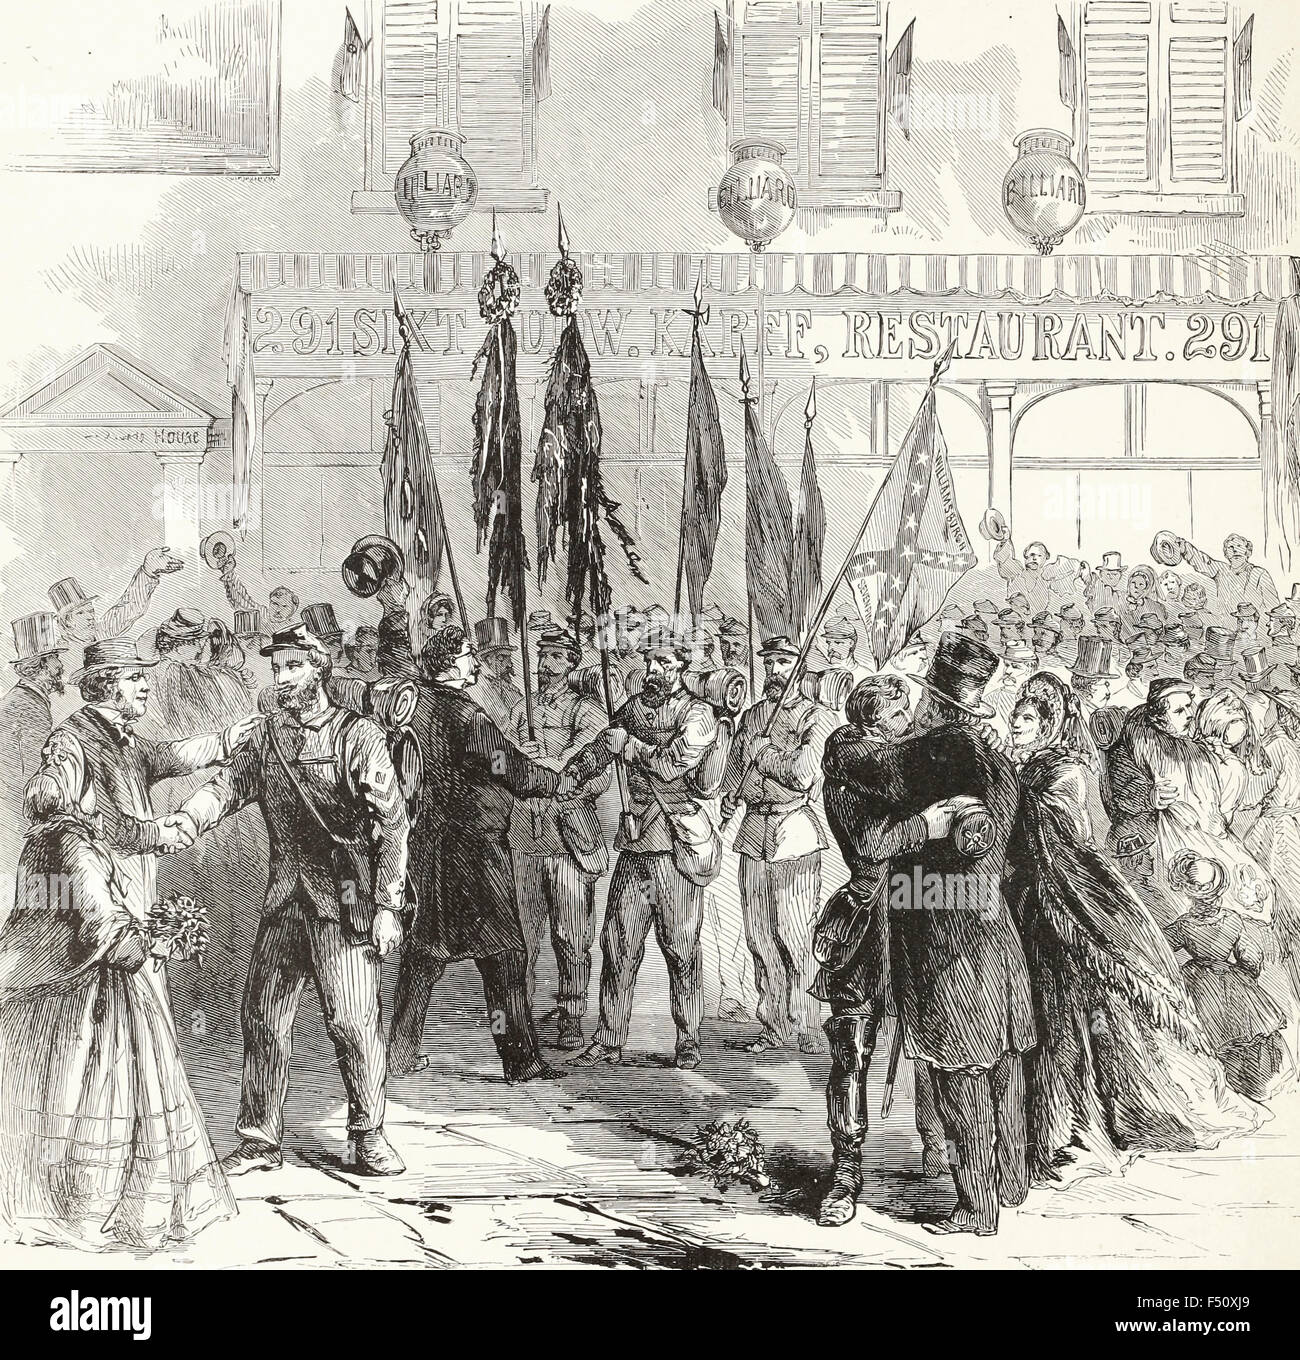 Der Soldat Rest - Freunde der siebte und achte Regimenter, New York Volunteers, begrüßen die Rückkehr von ihren Helden nach New York, 28. April 1863. USA Bürgerkrieg Stockfoto